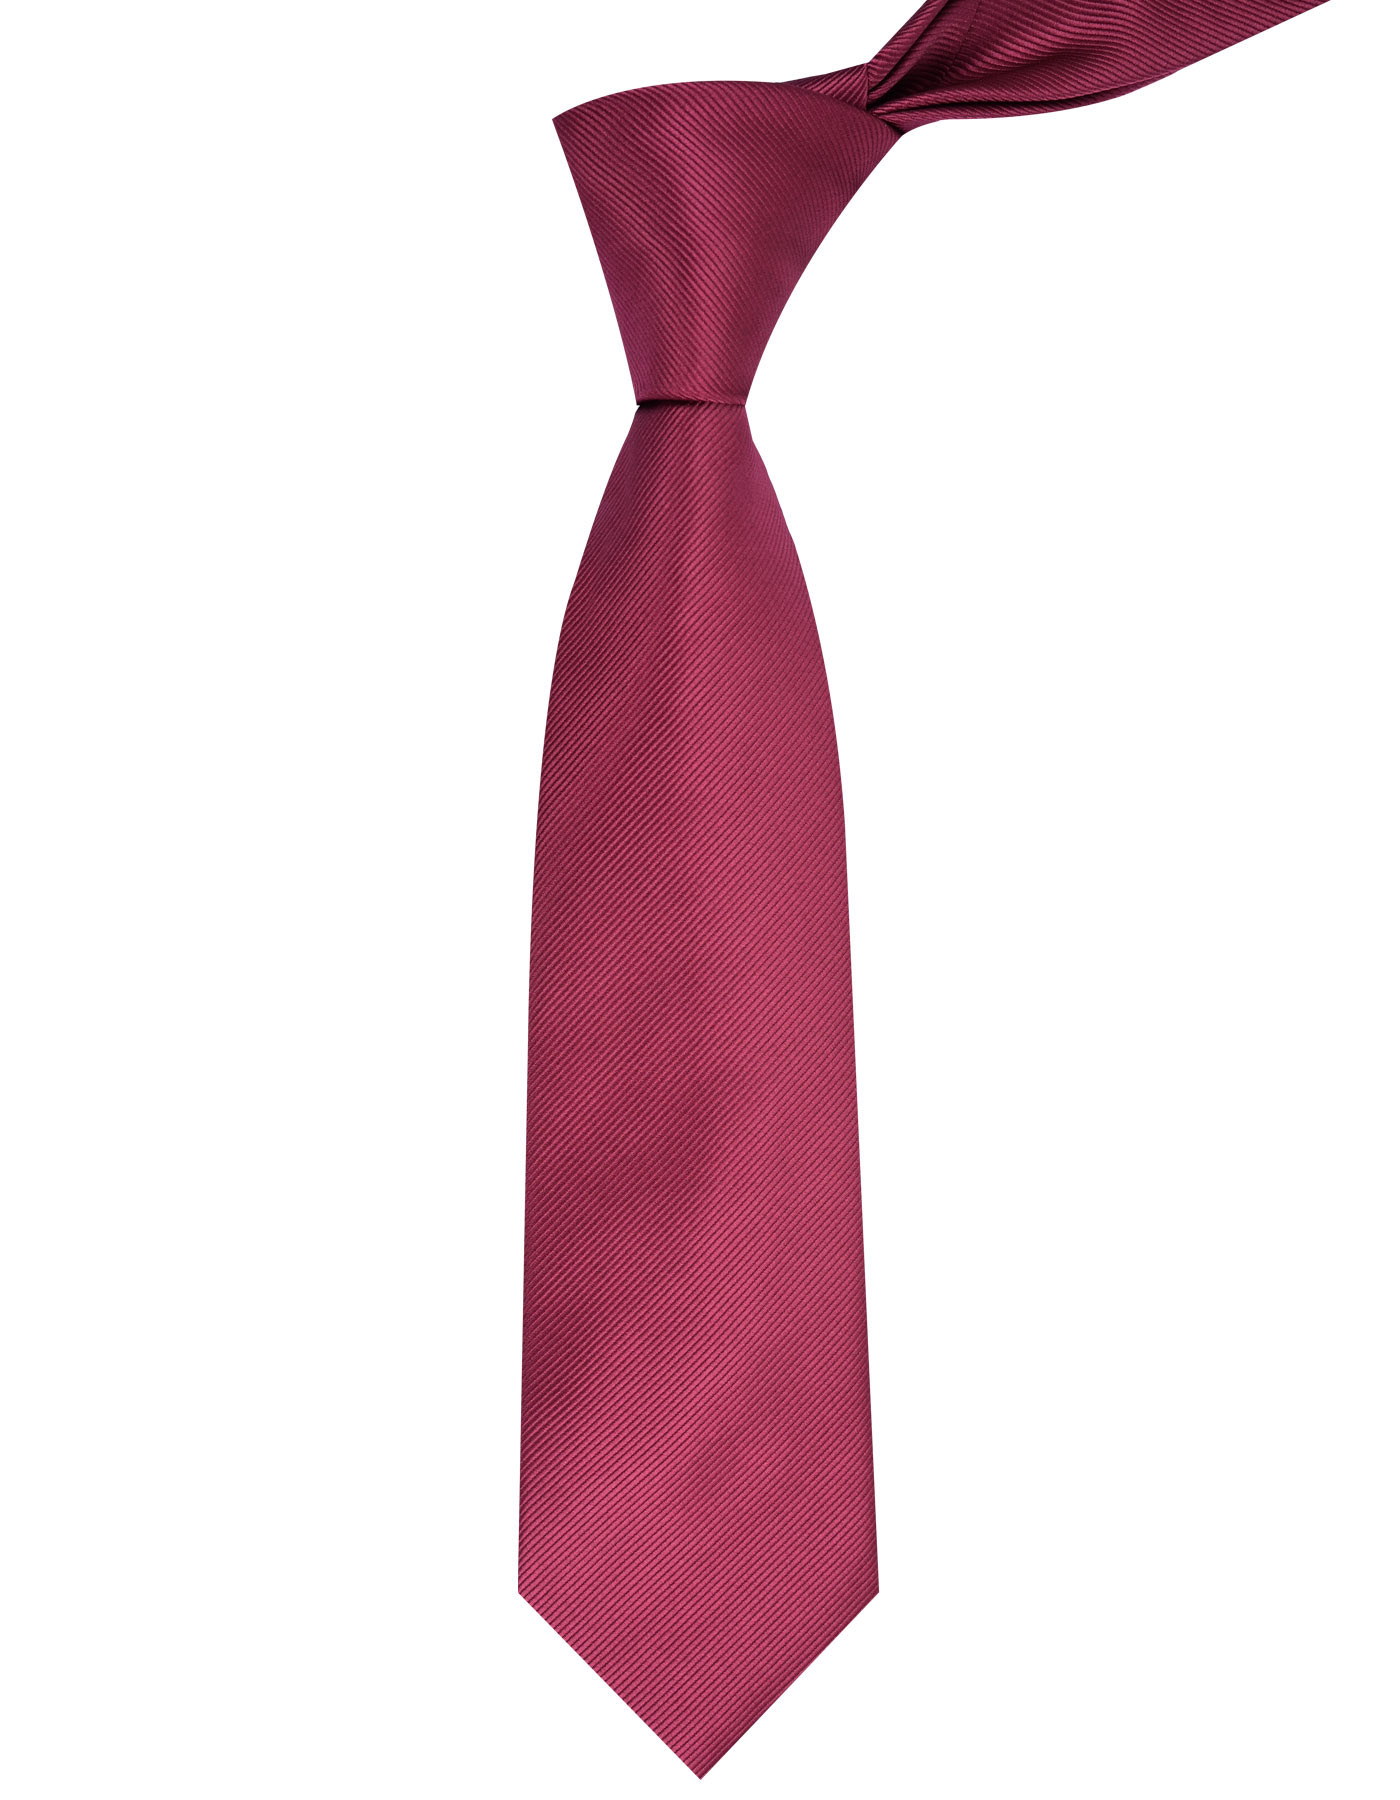 Maroon Regular Tie For Men